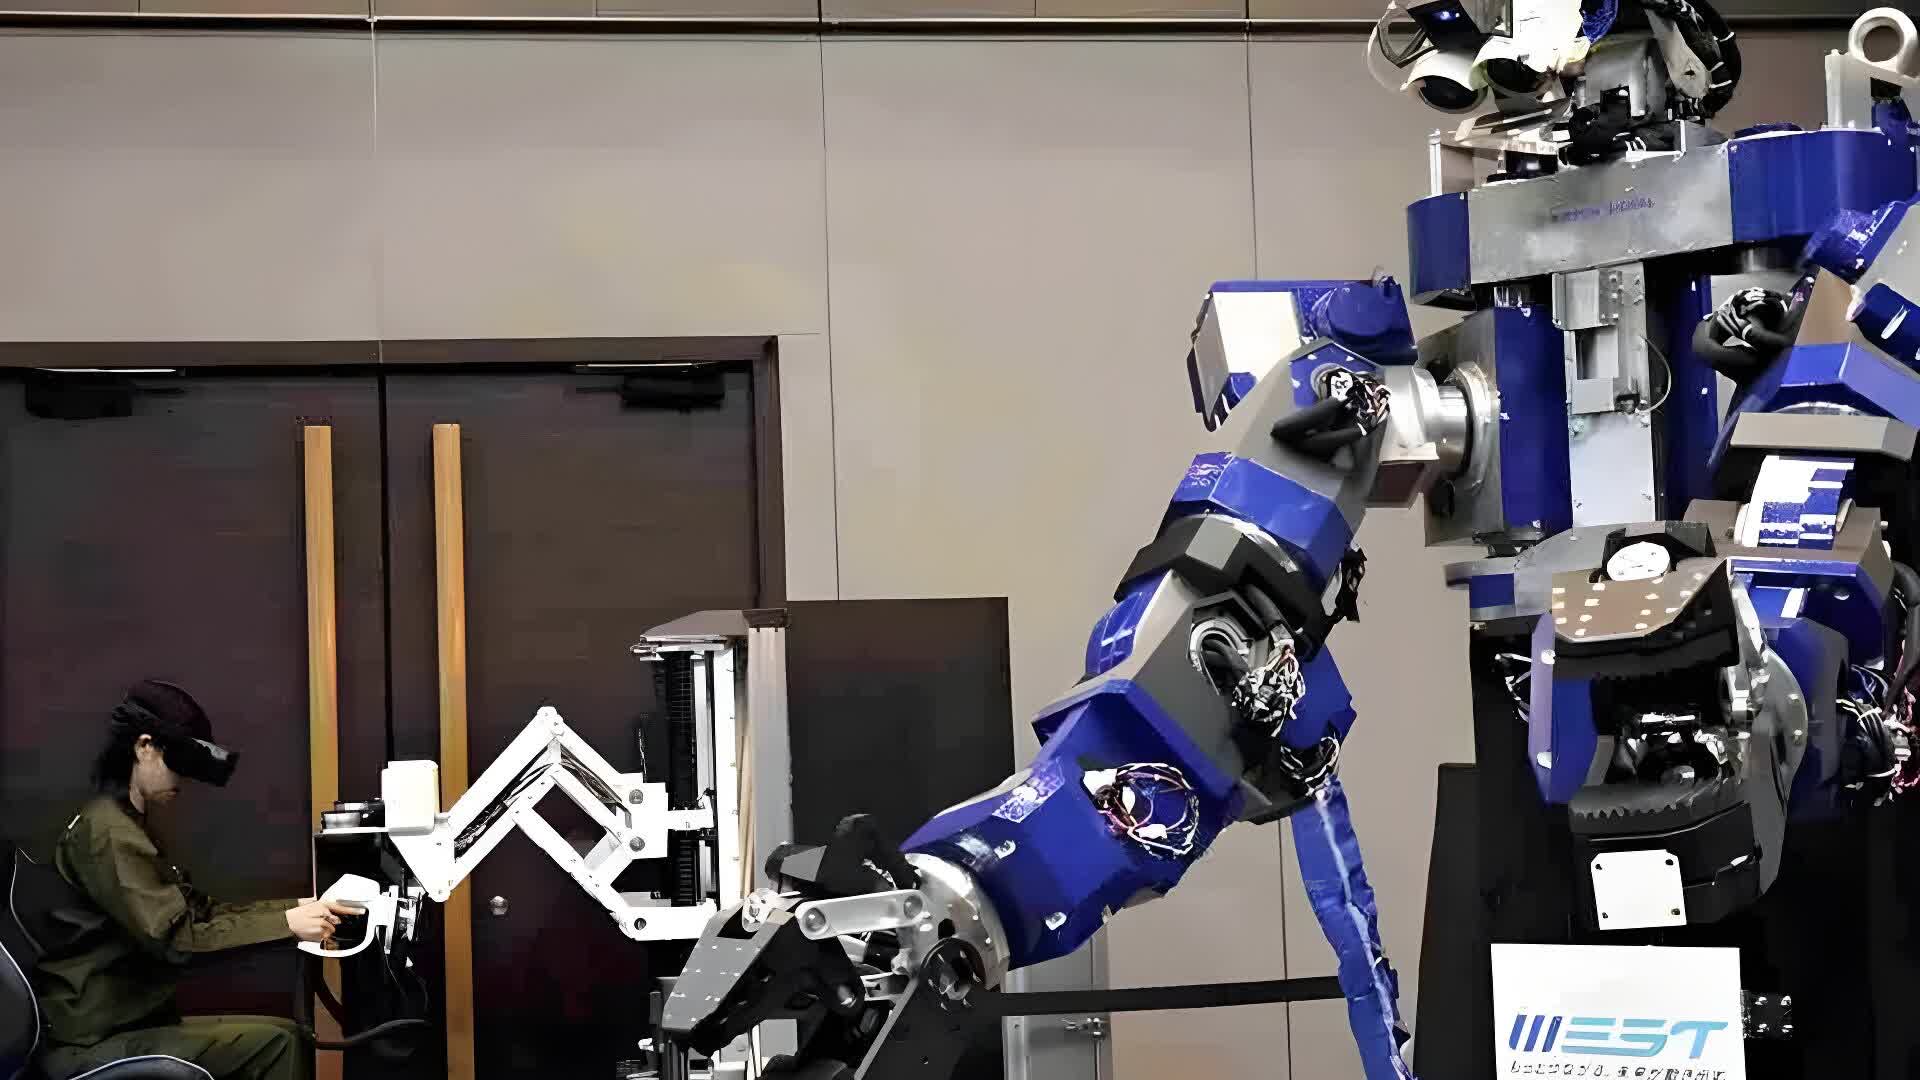 dernier robot géant japonais type Gundam charge tâches maintenance ferroviaire